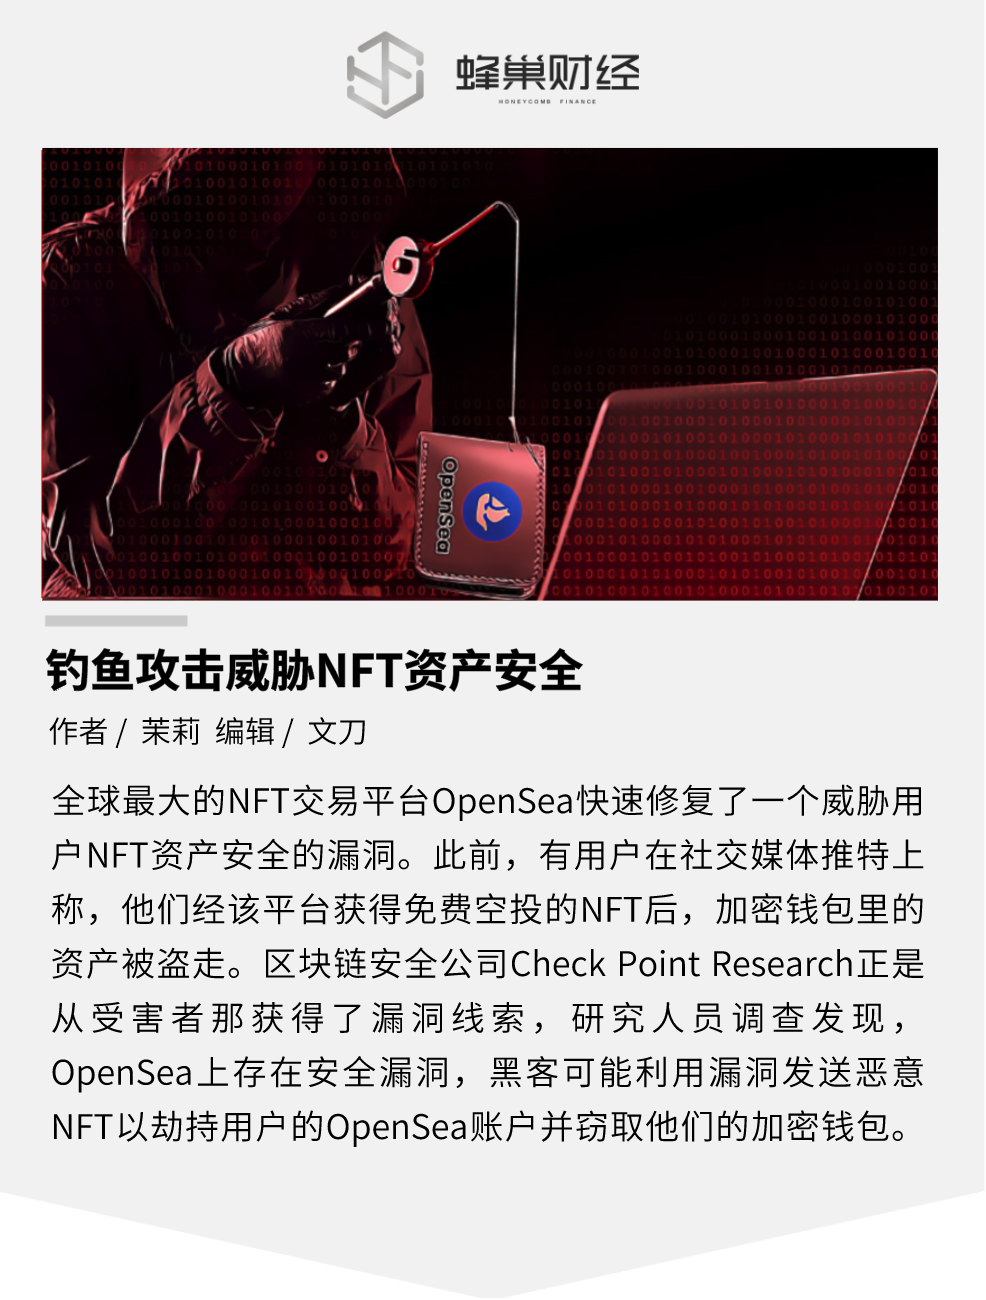 钓鱼攻击威胁资产，用户在 OpenSea 接收 NFT 空投后钱包被盗